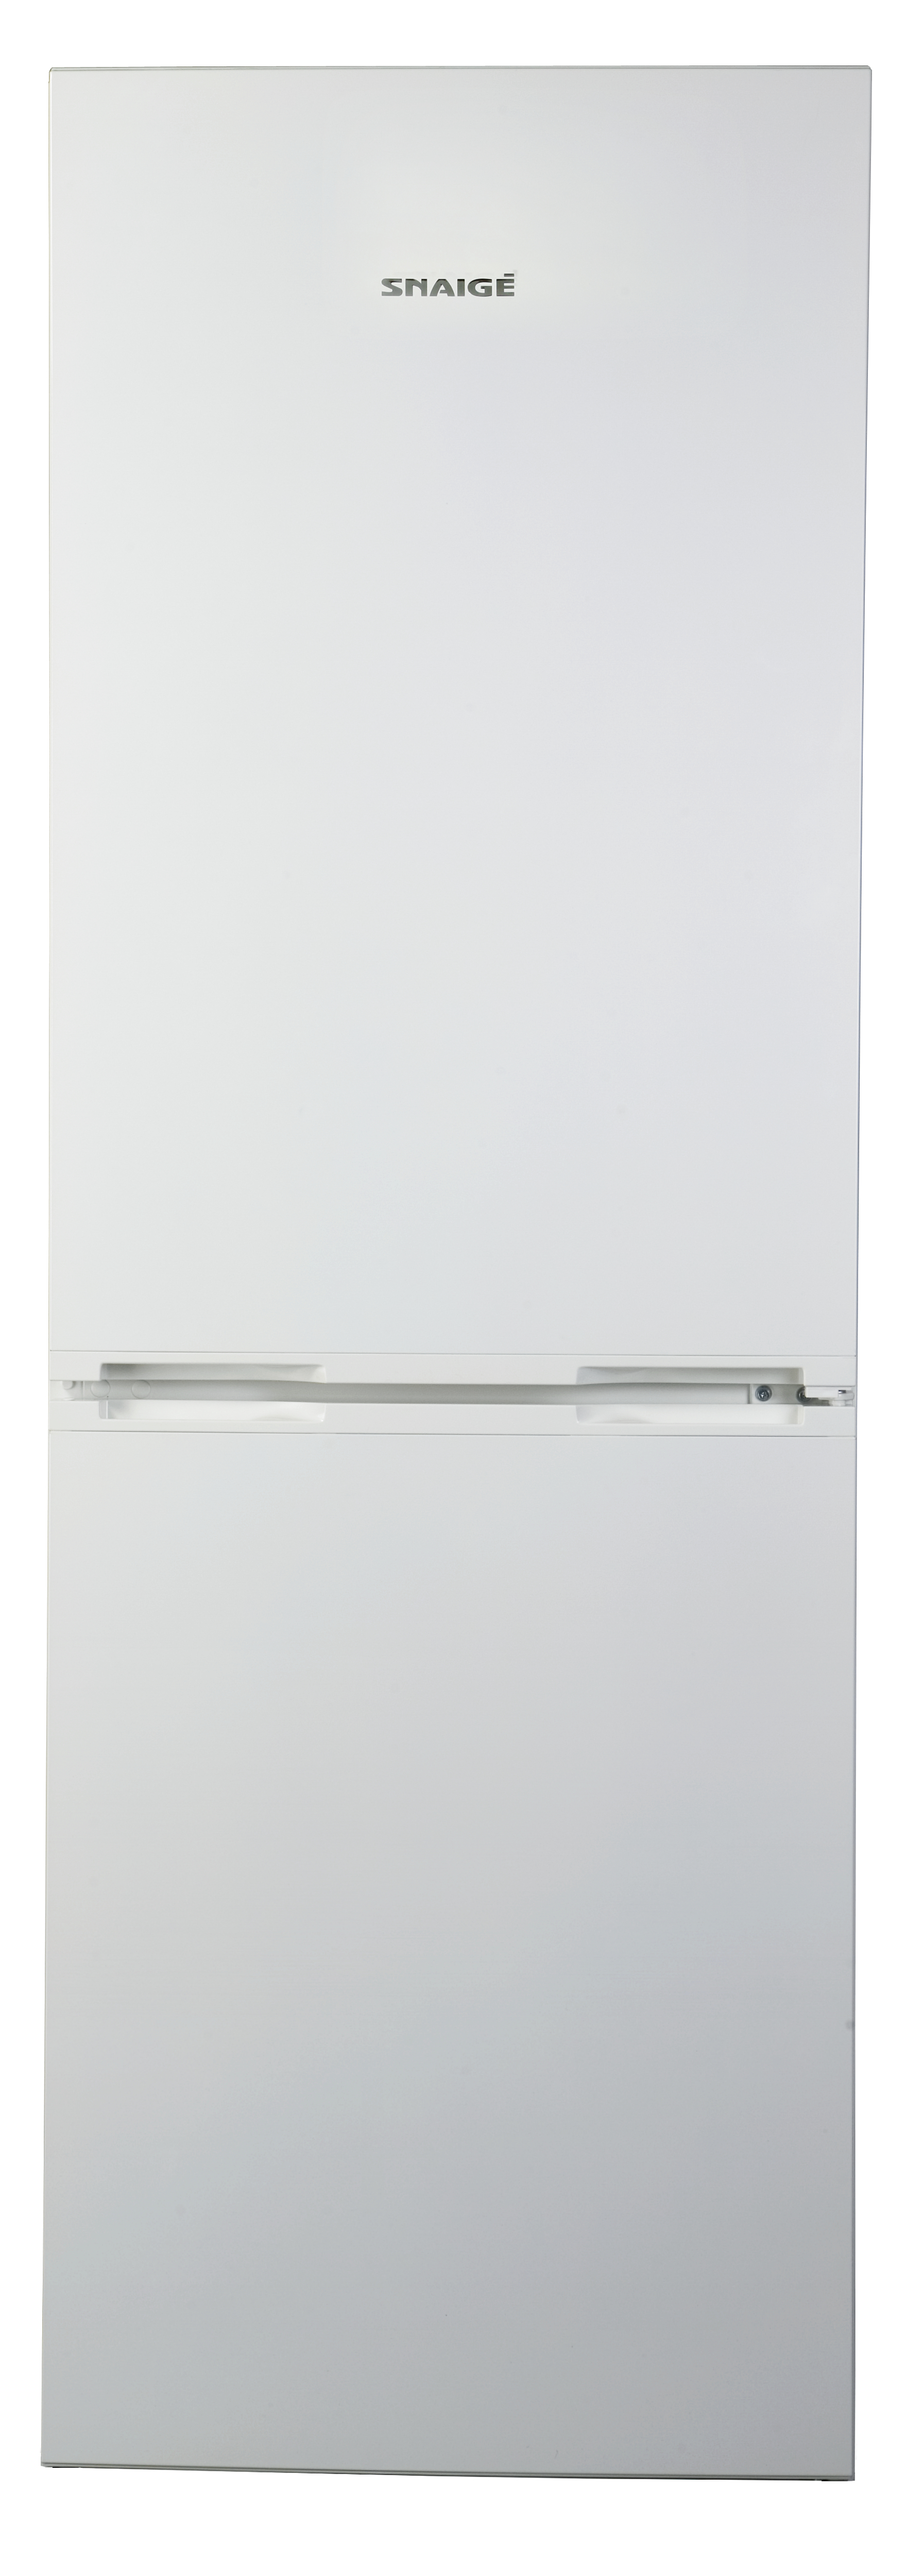 Холодильник Snaige RF53SG-S500210 — описание, фото, цены в интернет-магазине Премьер Техно